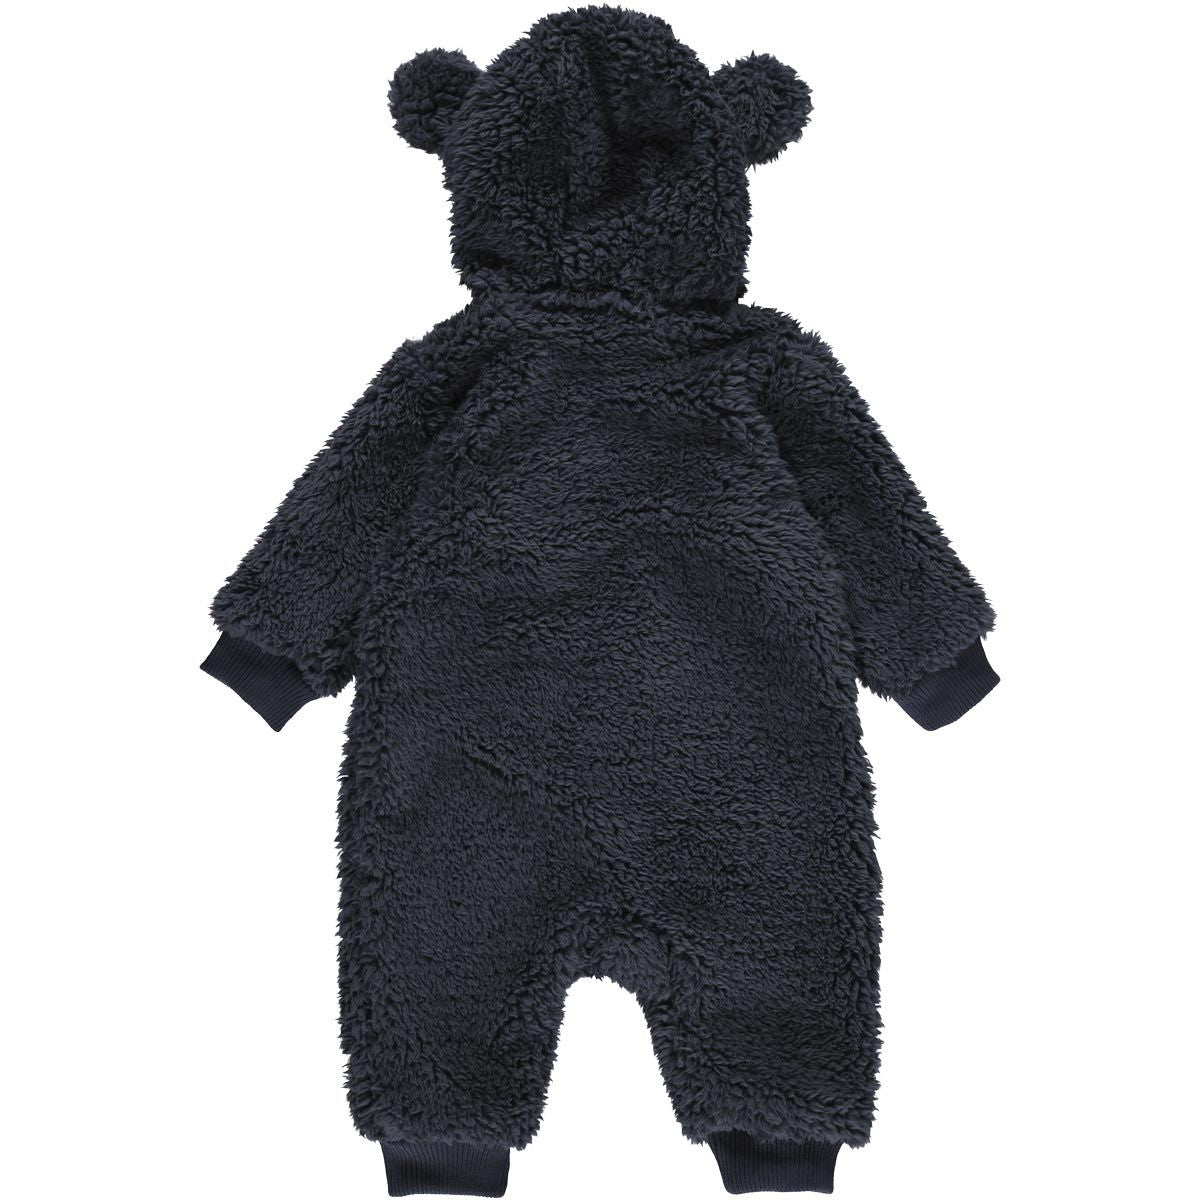 donkerblauw baby berenpakje achterkant